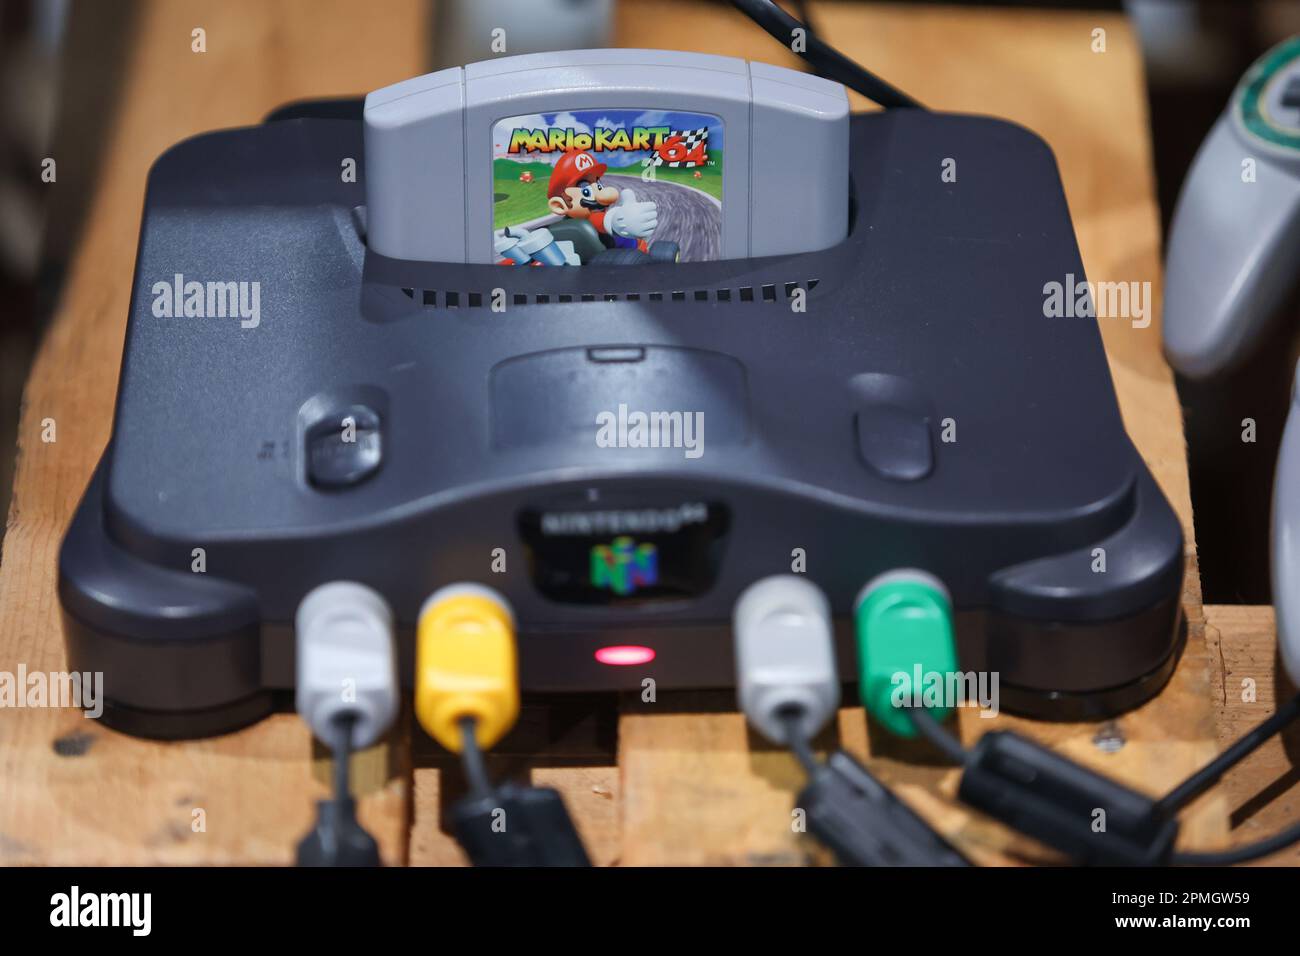 Cartucho de vídeo game Nintendo N64 Mario Kart 64 Versão EUA :  : Games e Consoles